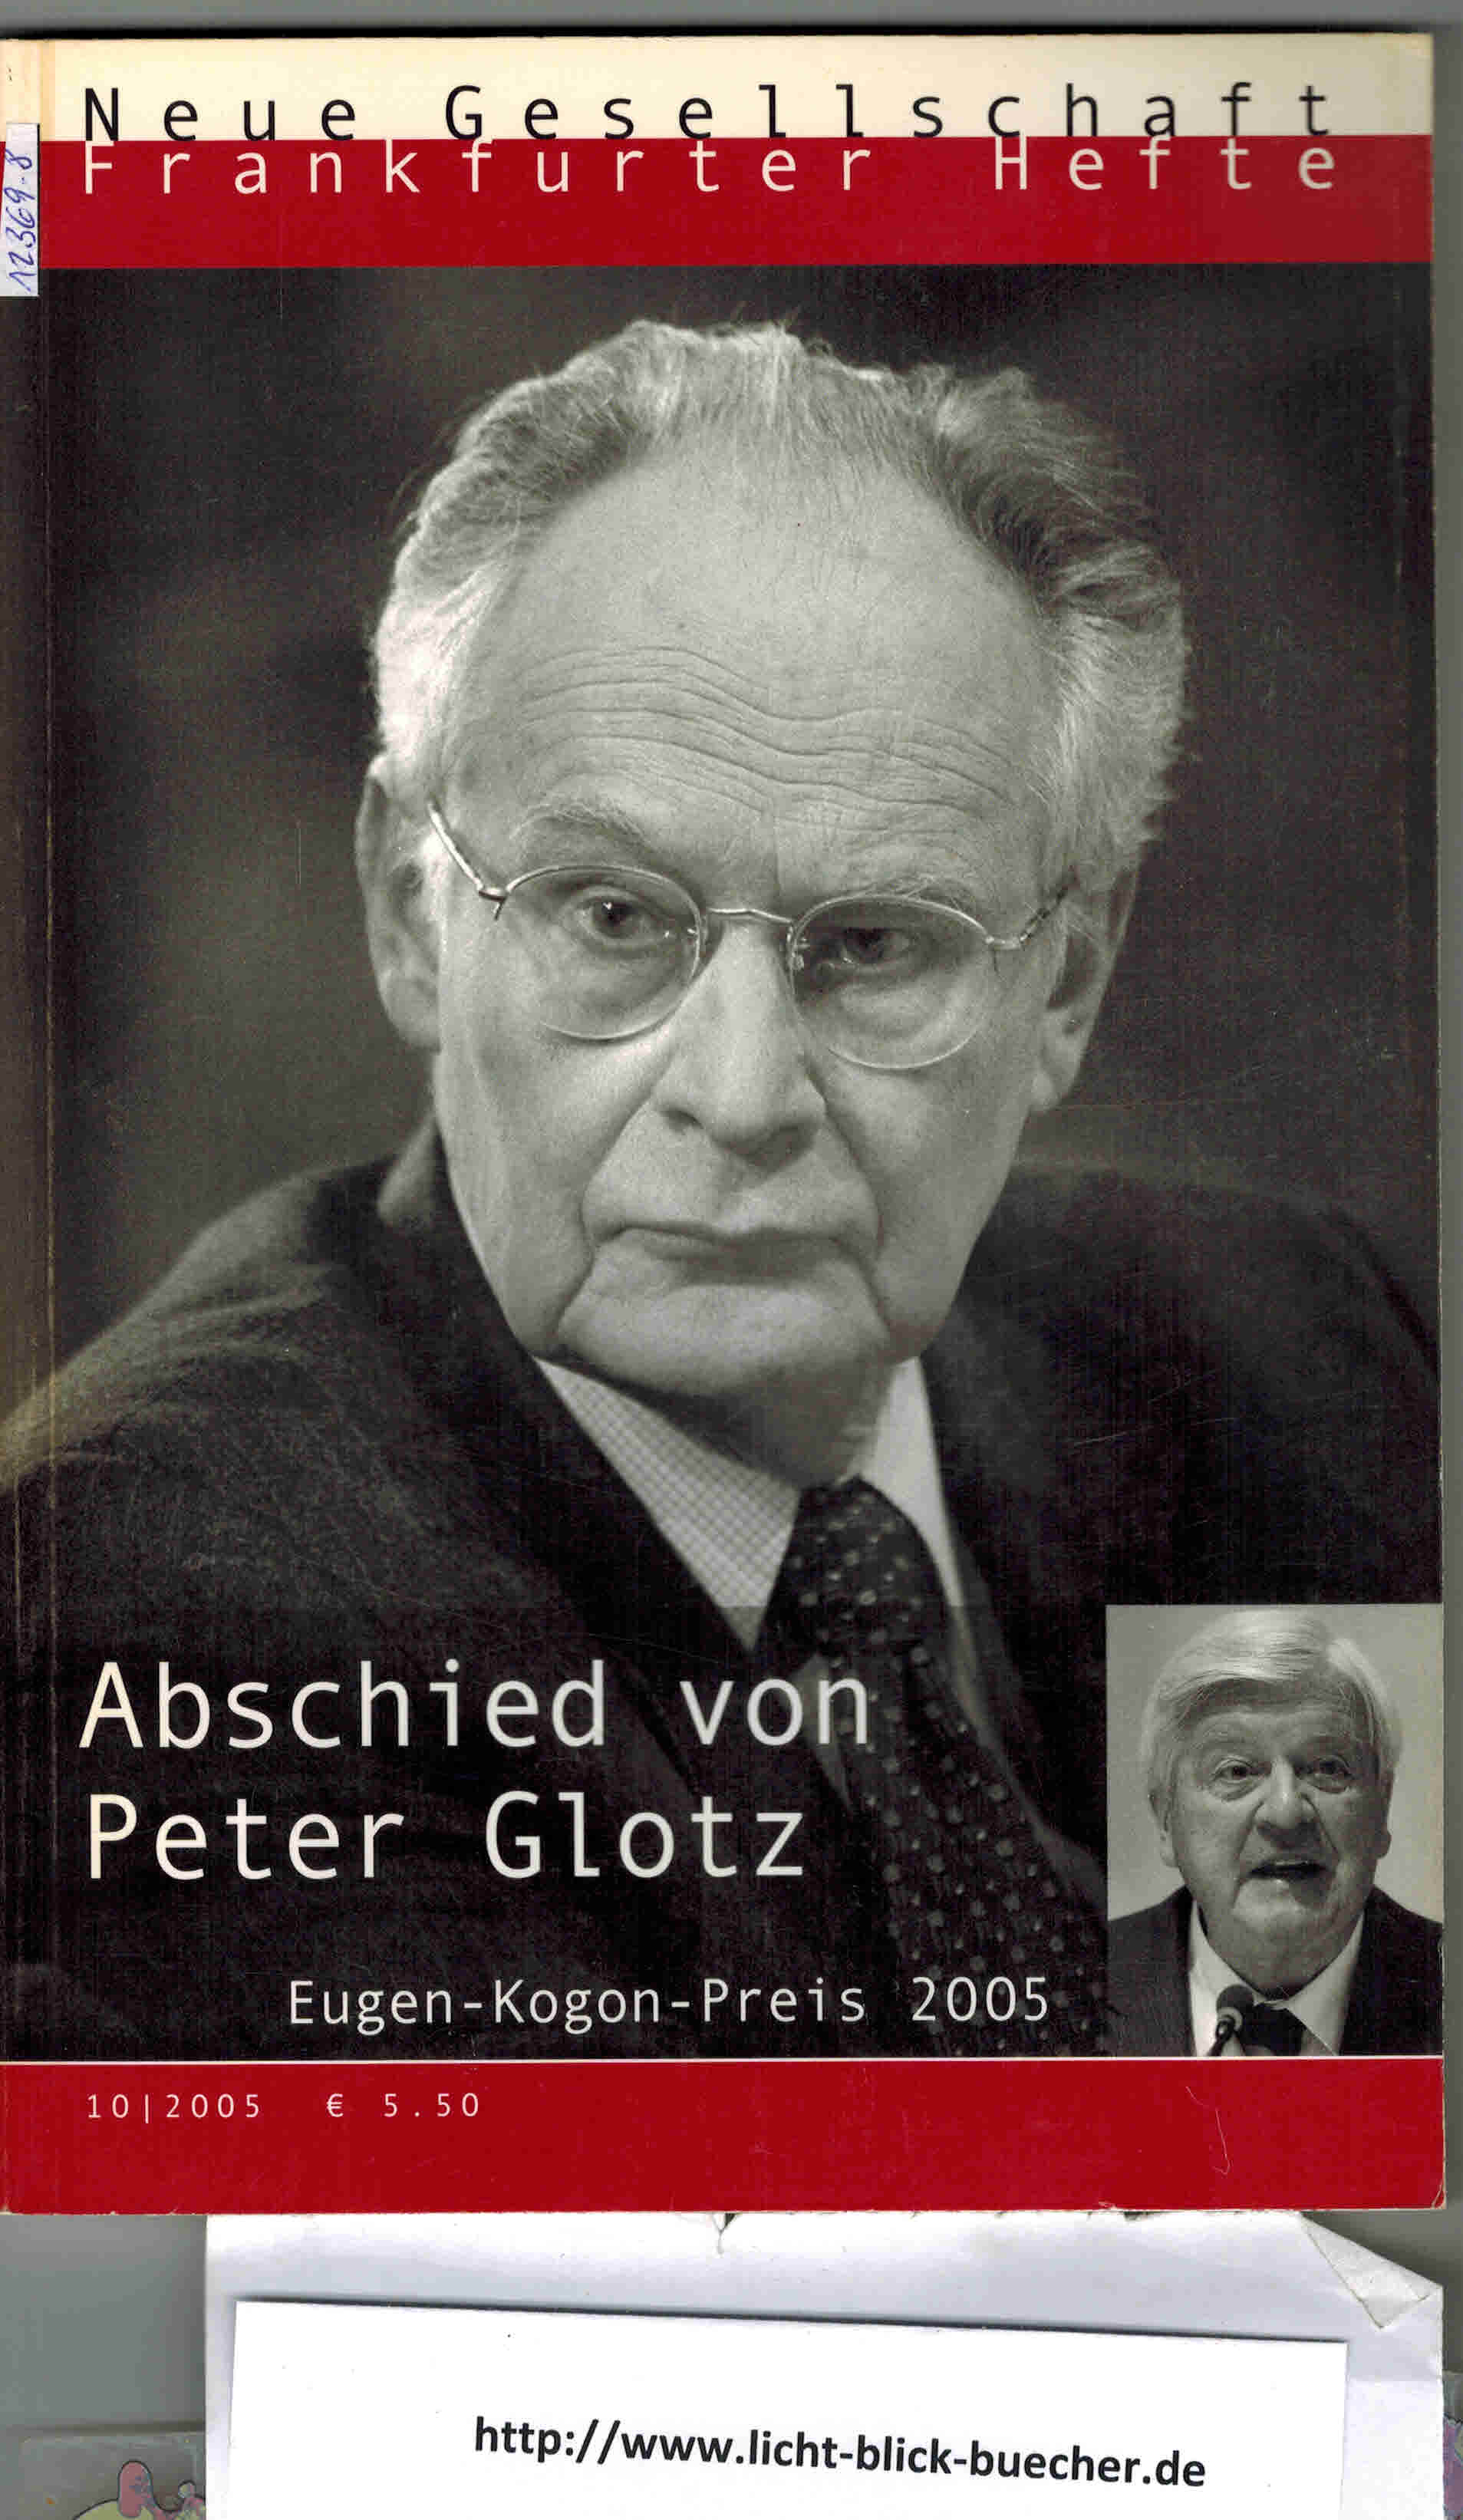 Die Neue GesellschaftFrankfurter Hefte 10/ 2005 ( Abschied von Peter Glotz , Eugen Kagon Preis 2005 )